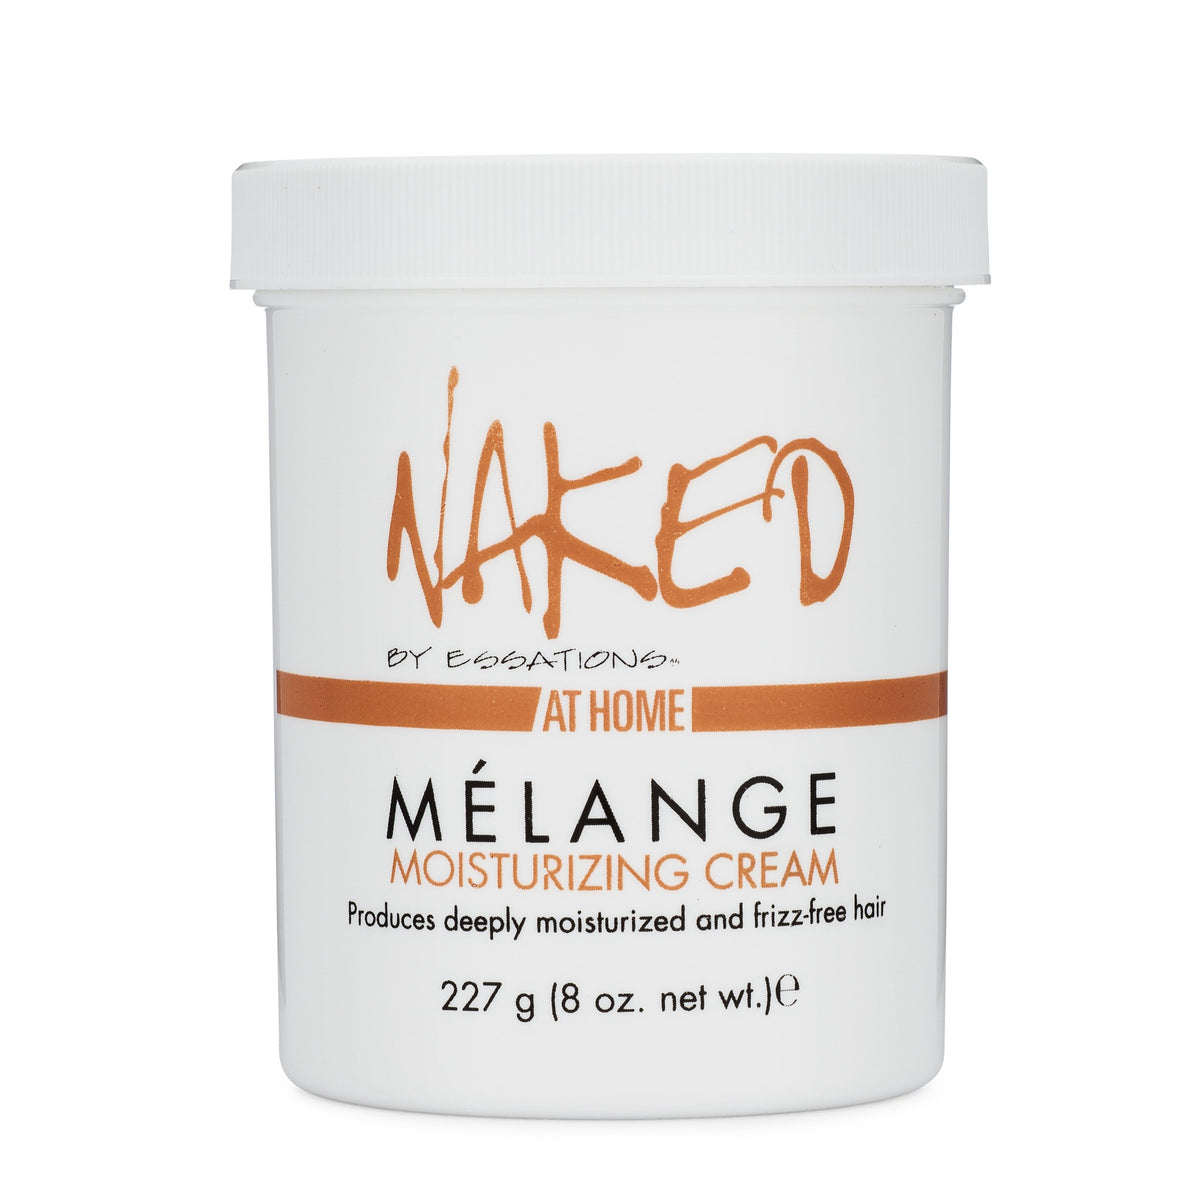 Naked Melange Moisturizing Cream